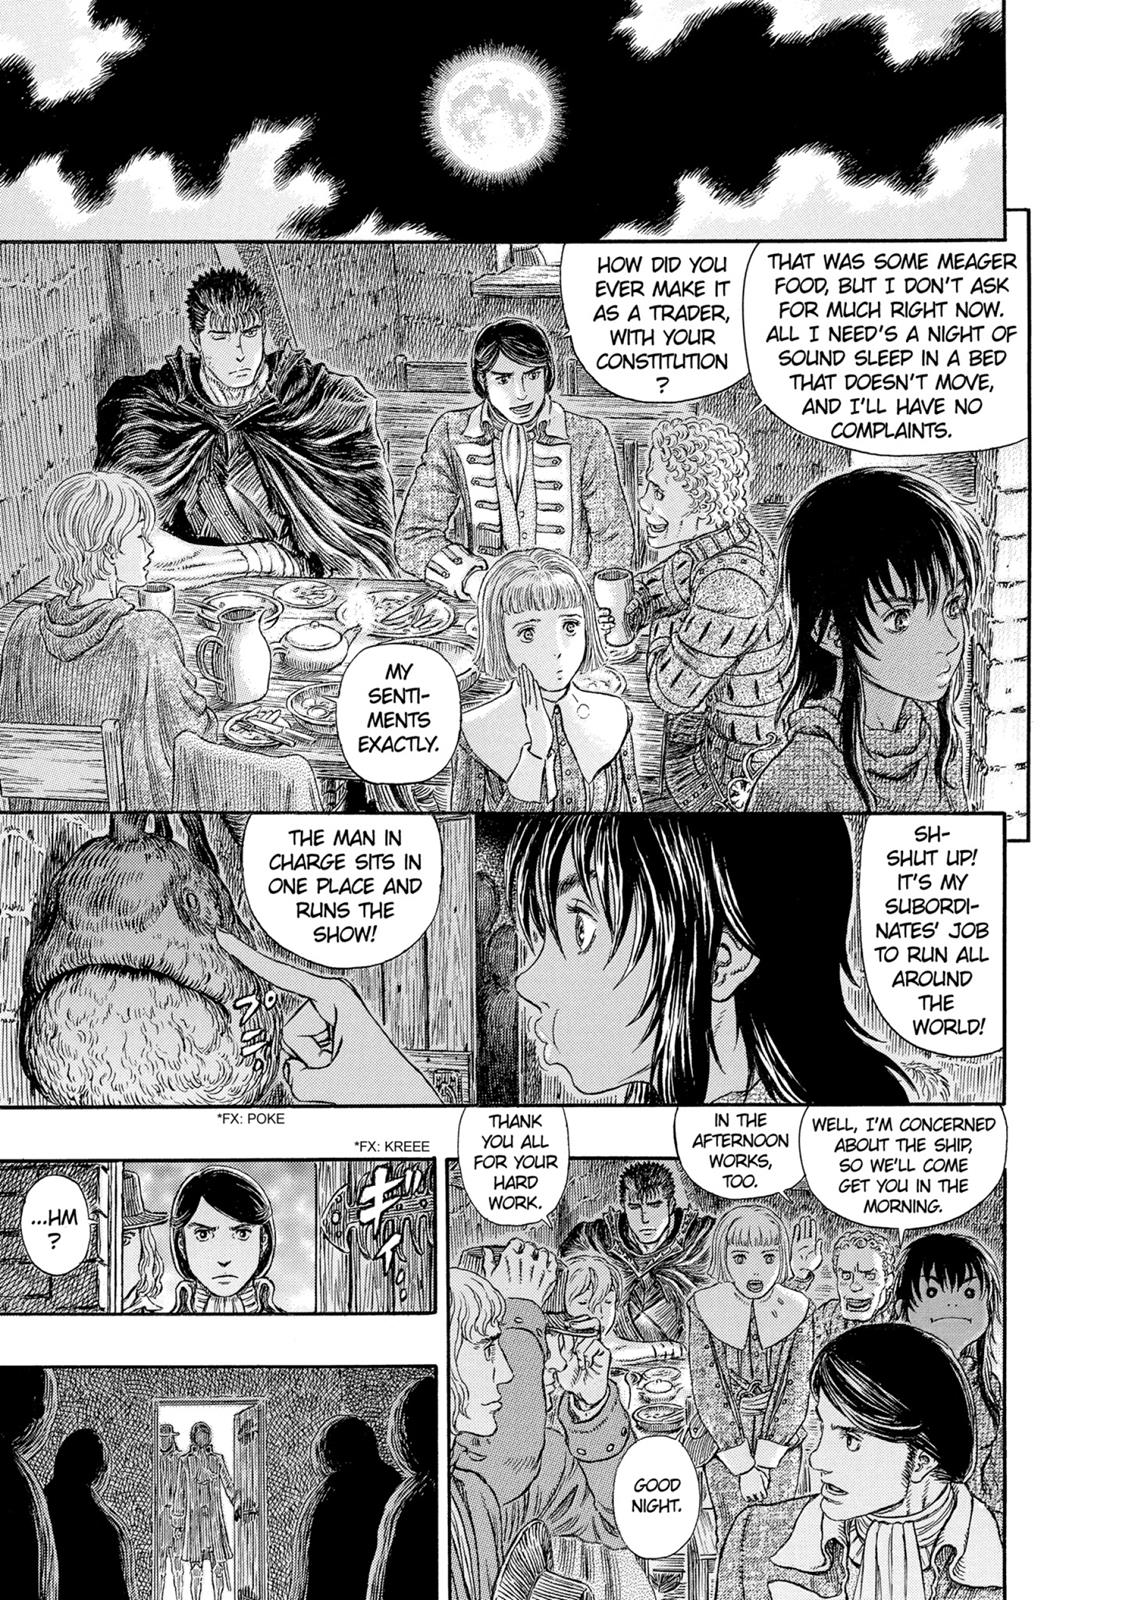 Berserk Manga Chapter 313 image 12